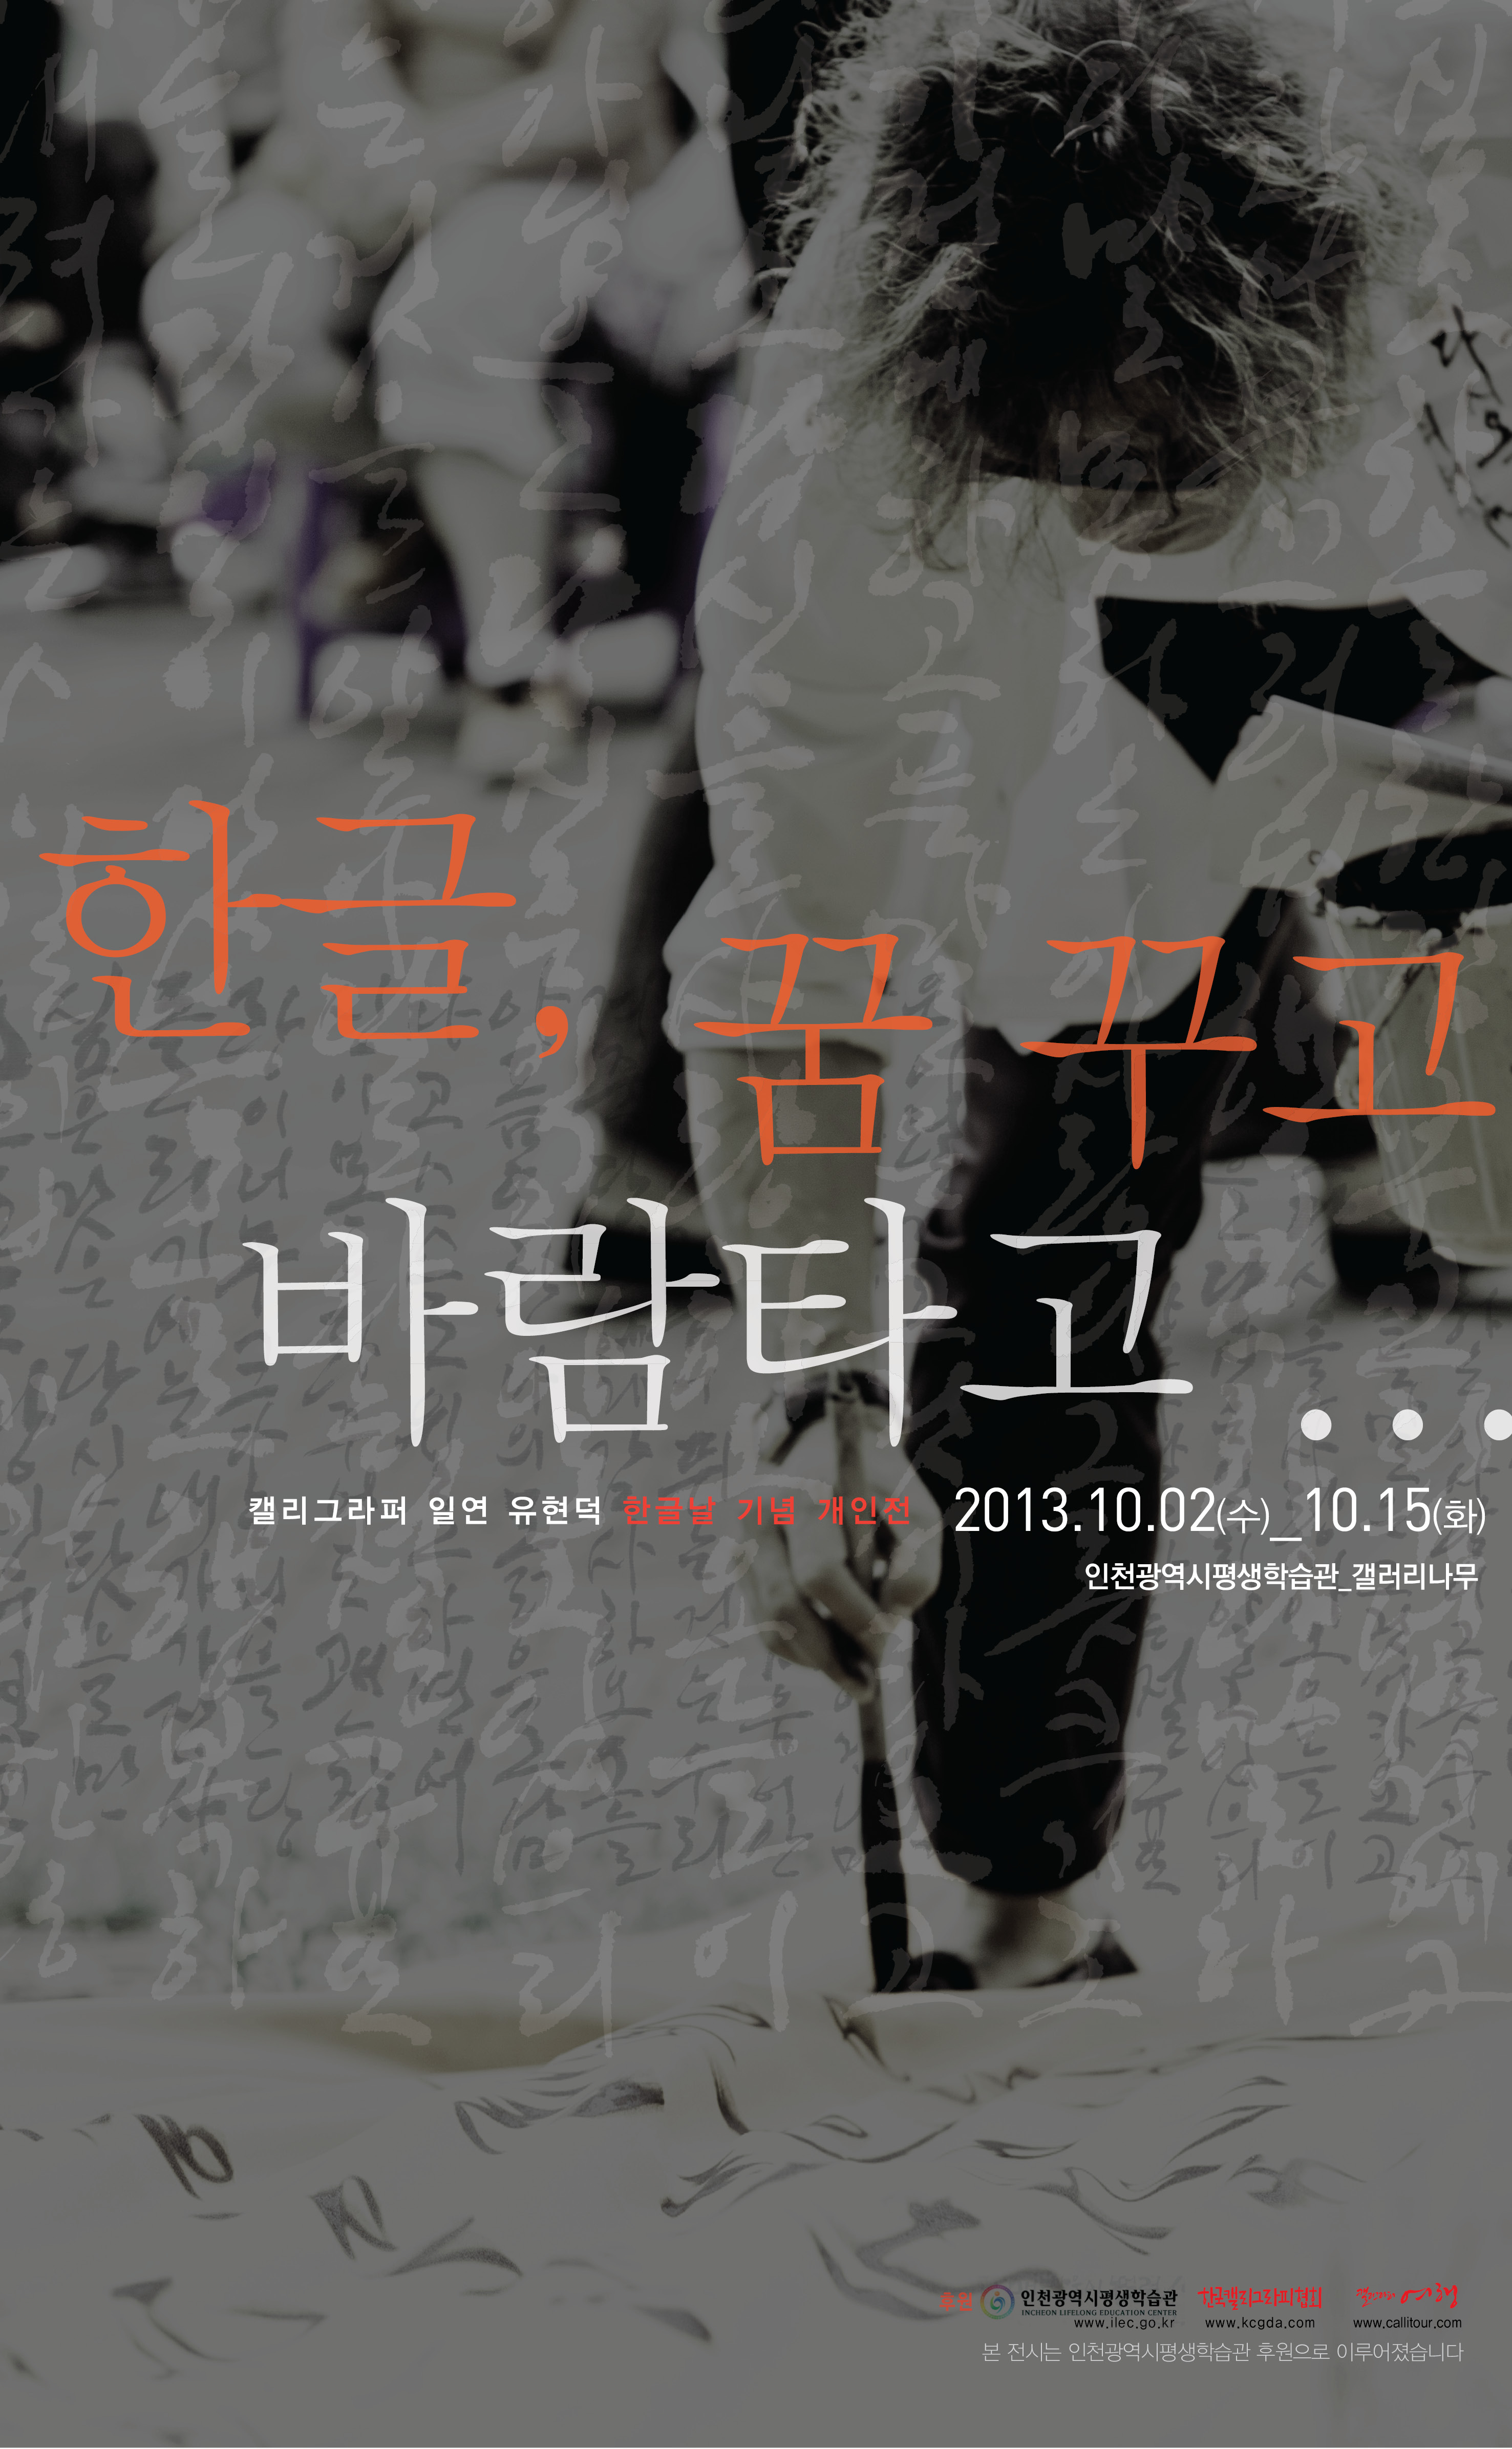 [2013 기획대관전시] 유현덕 한글, 꿈꾸고 바람타고展 관련 포스터 - 자세한 내용은 본문참조